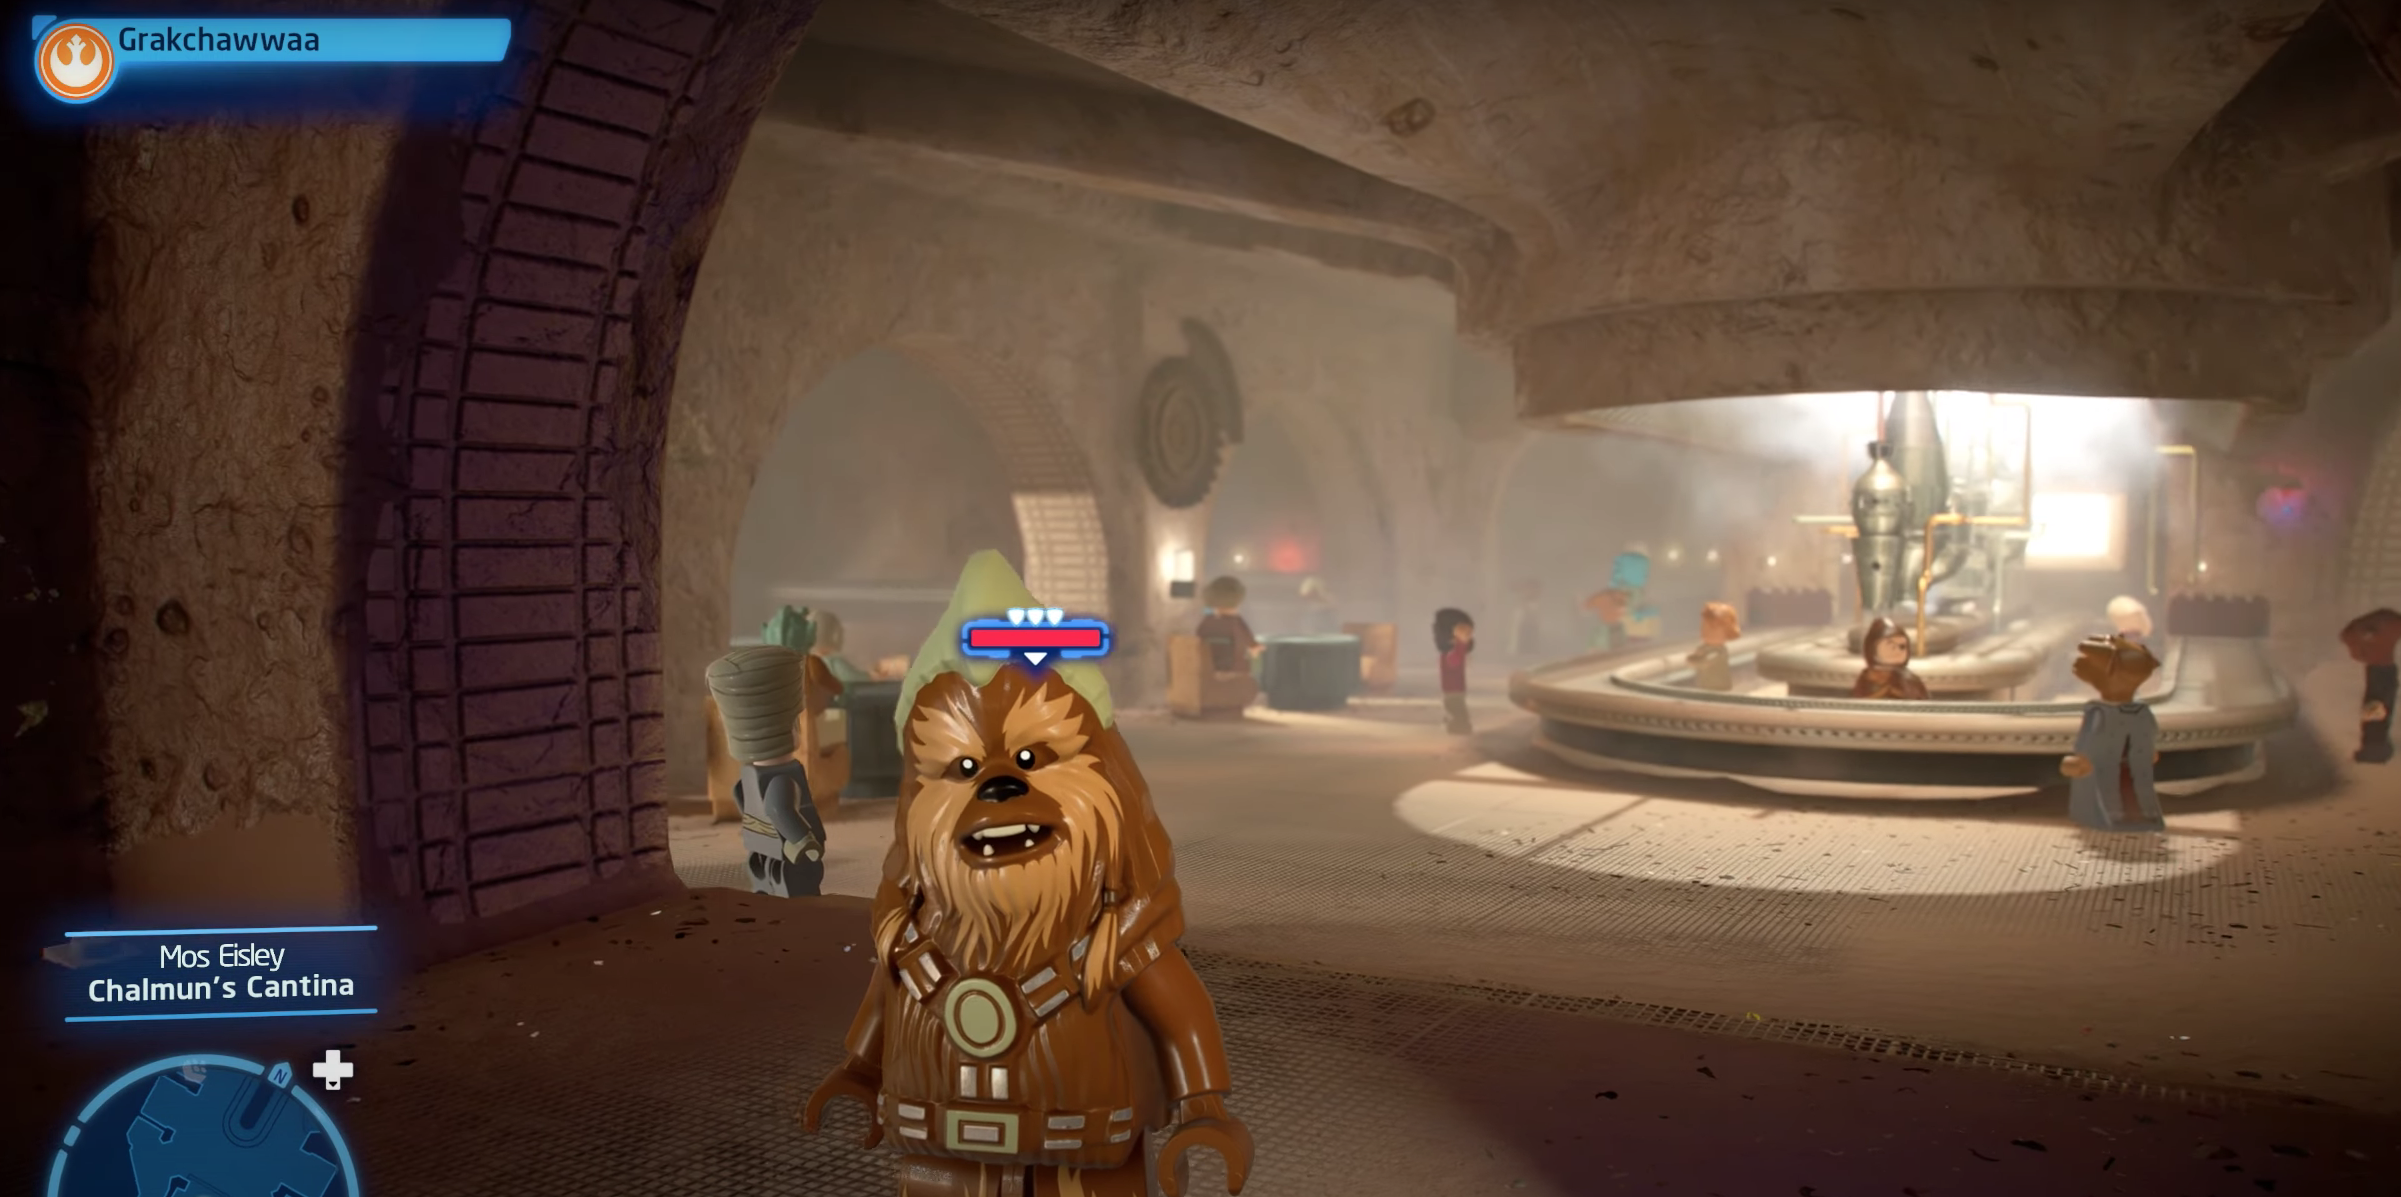 LEGO Star Wars Grakchawwaa